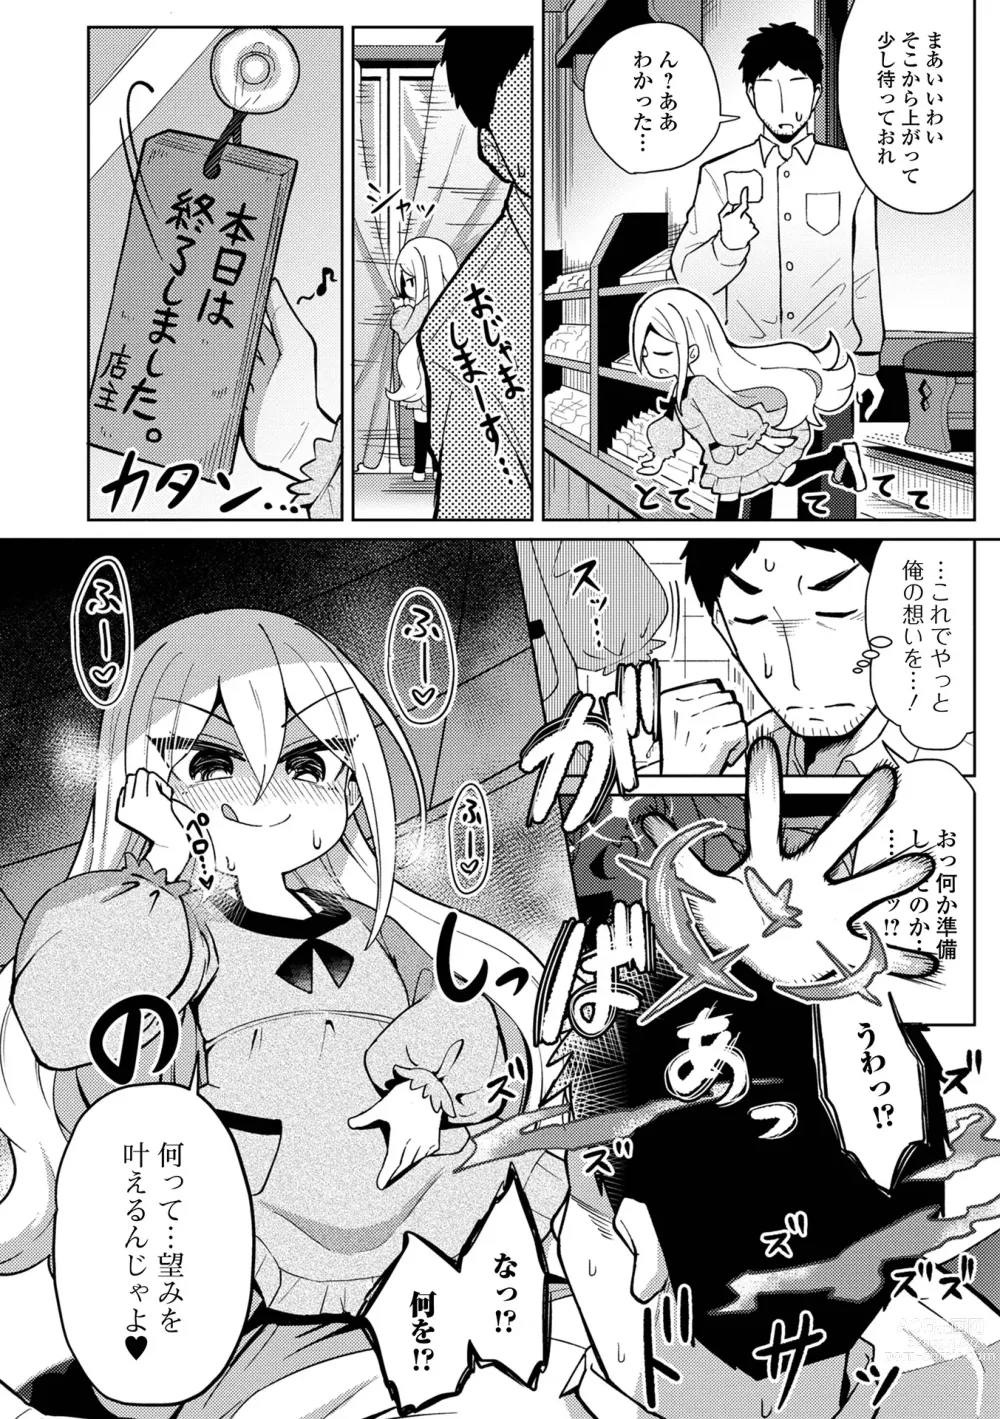 Page 4 of manga Eternal Hime-sama Loli Baba Anthology Vol.1